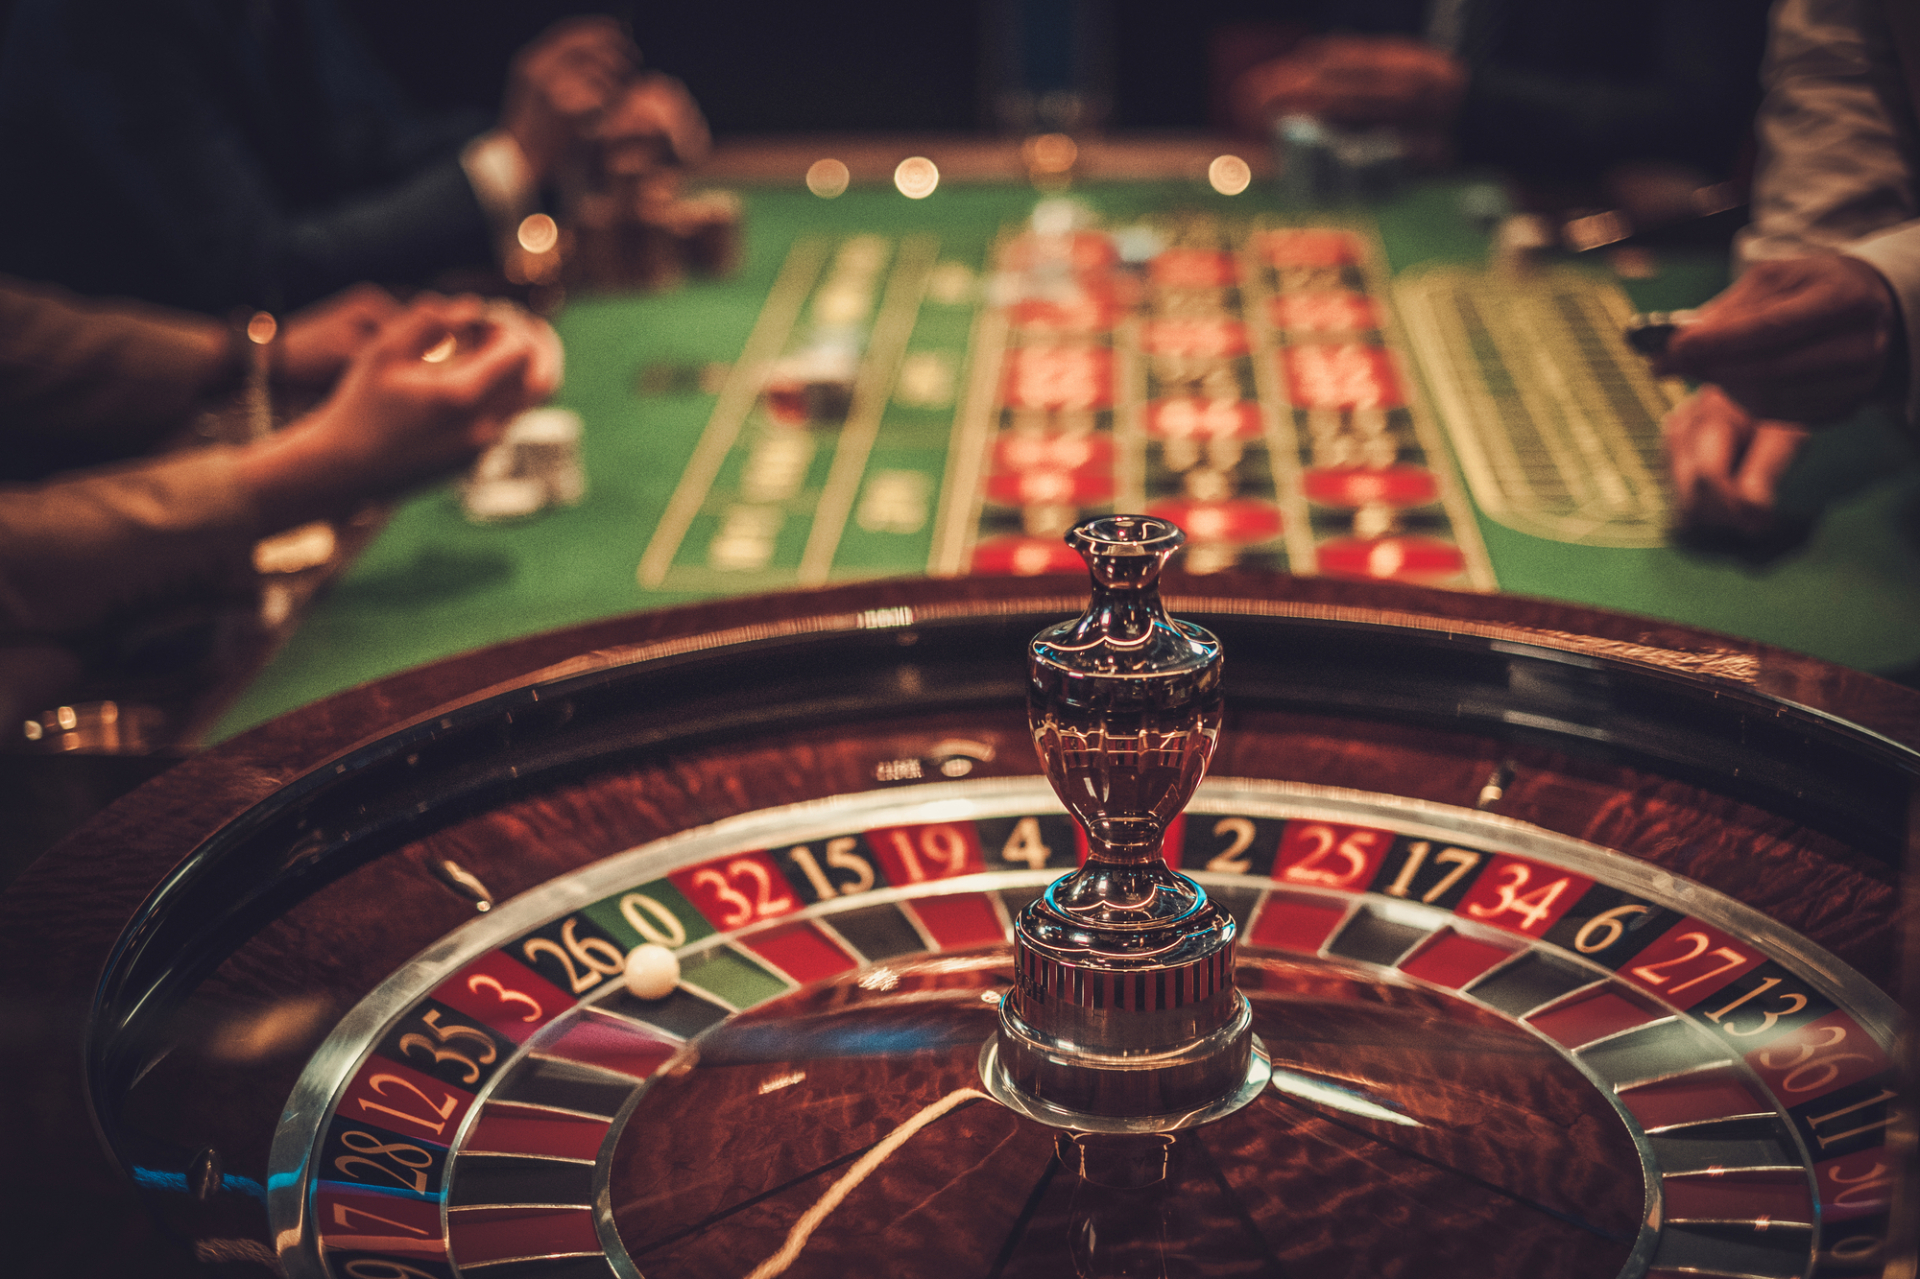 Kaszinó Cosplay: A szerencsejátékhoz való öltözködés szubkultúrája